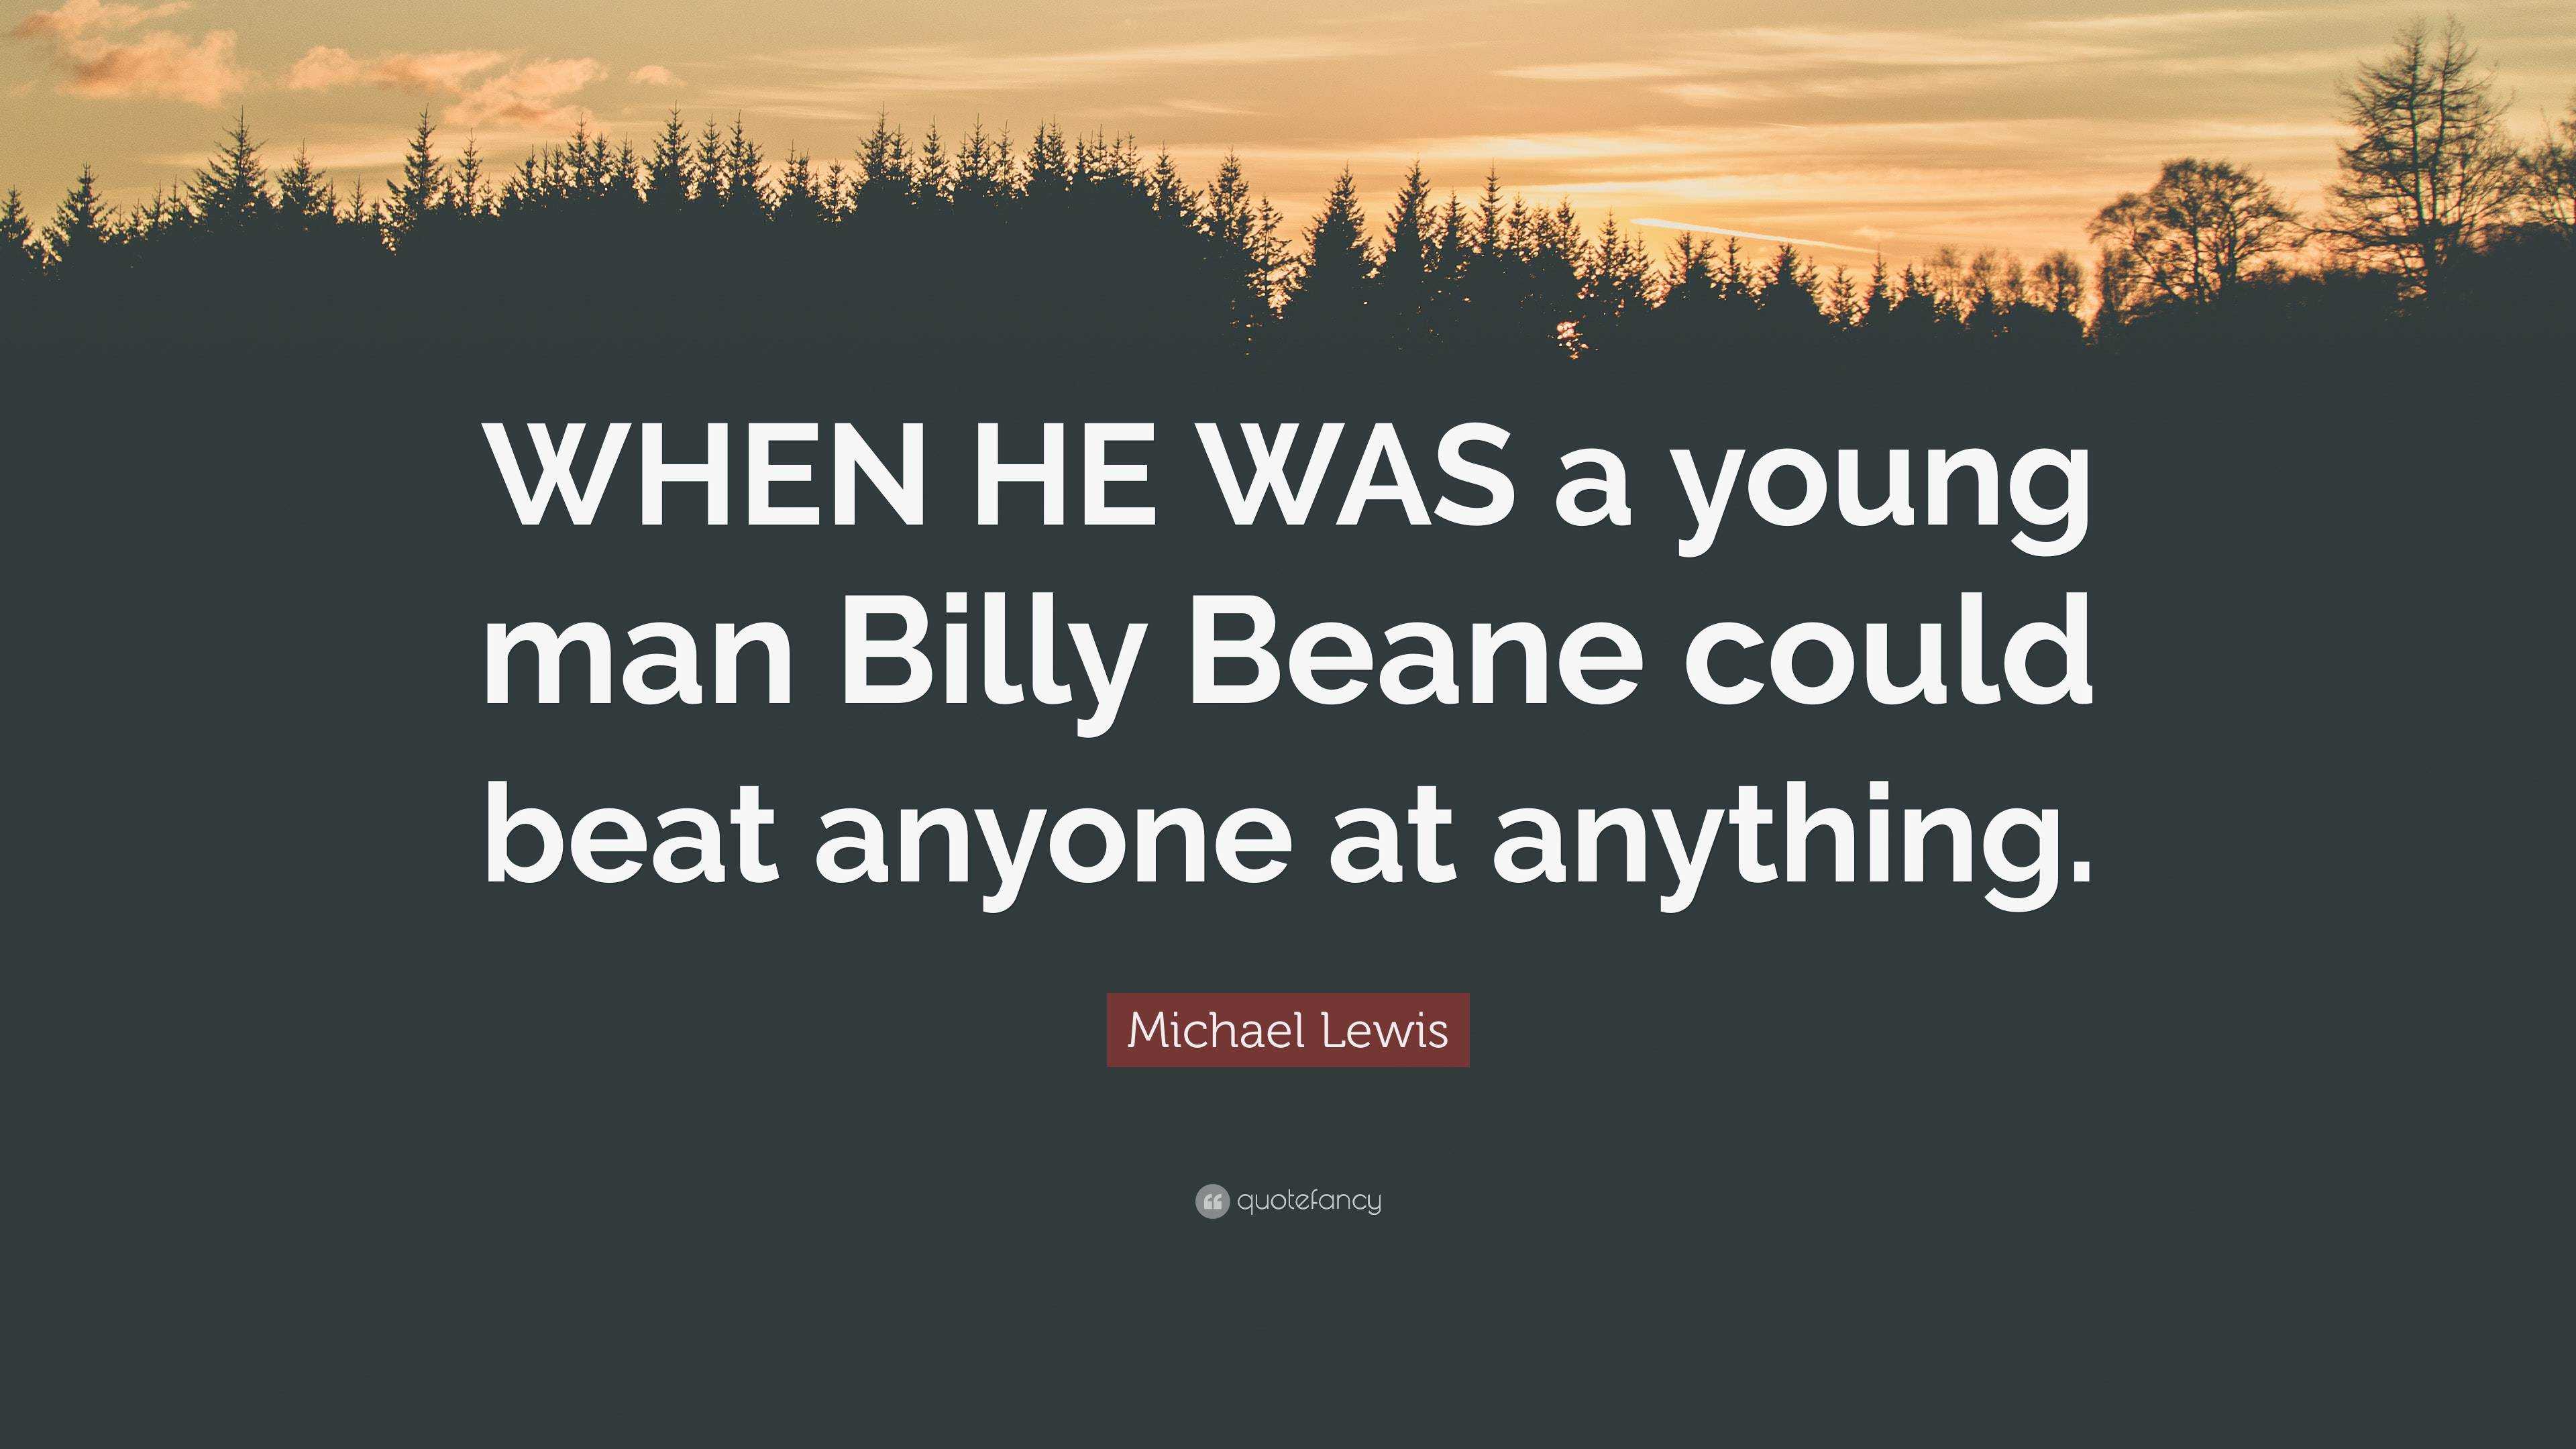 An Inspiring Evening with Billy Beane